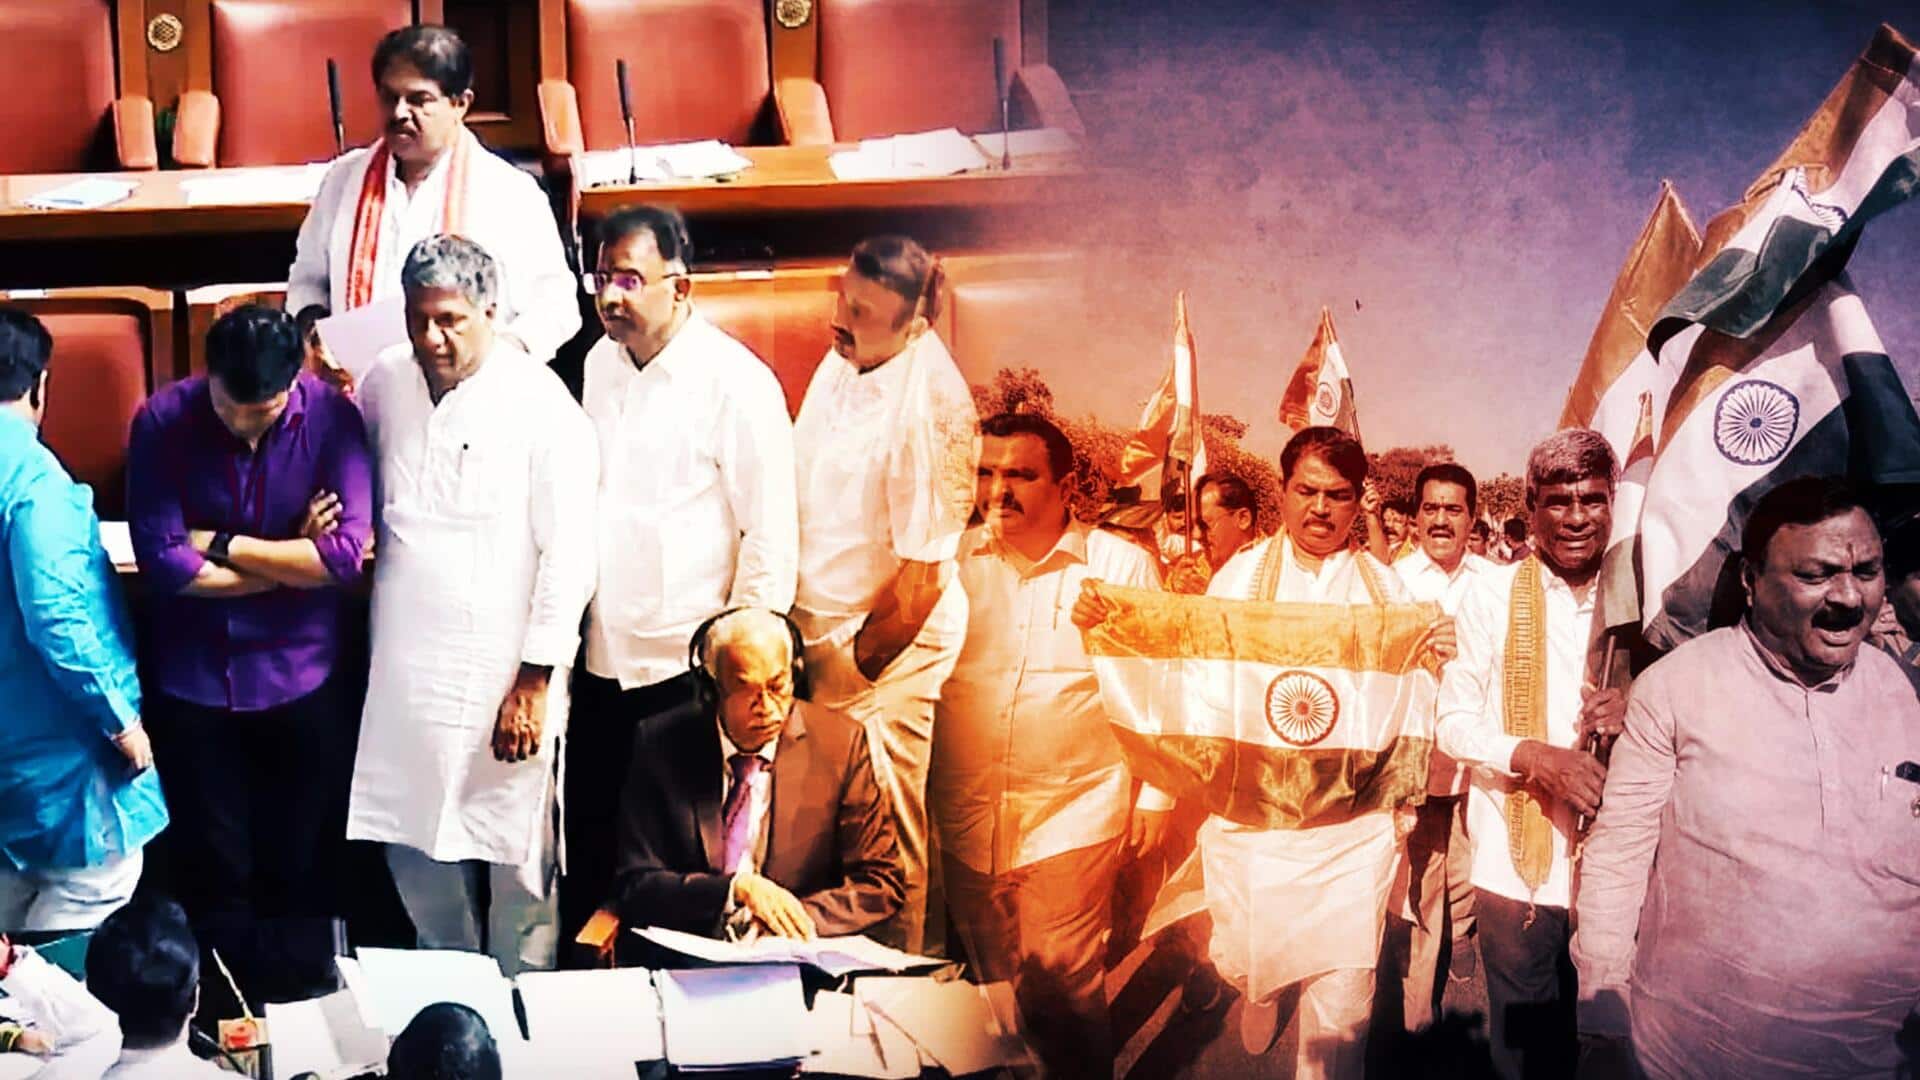 कर्नाटक विधानसभा में लगे थे 'पाकिस्तान समर्थक' नारे, फॉरेंसिक रिपोर्ट में पुष्टि- रिपोर्ट